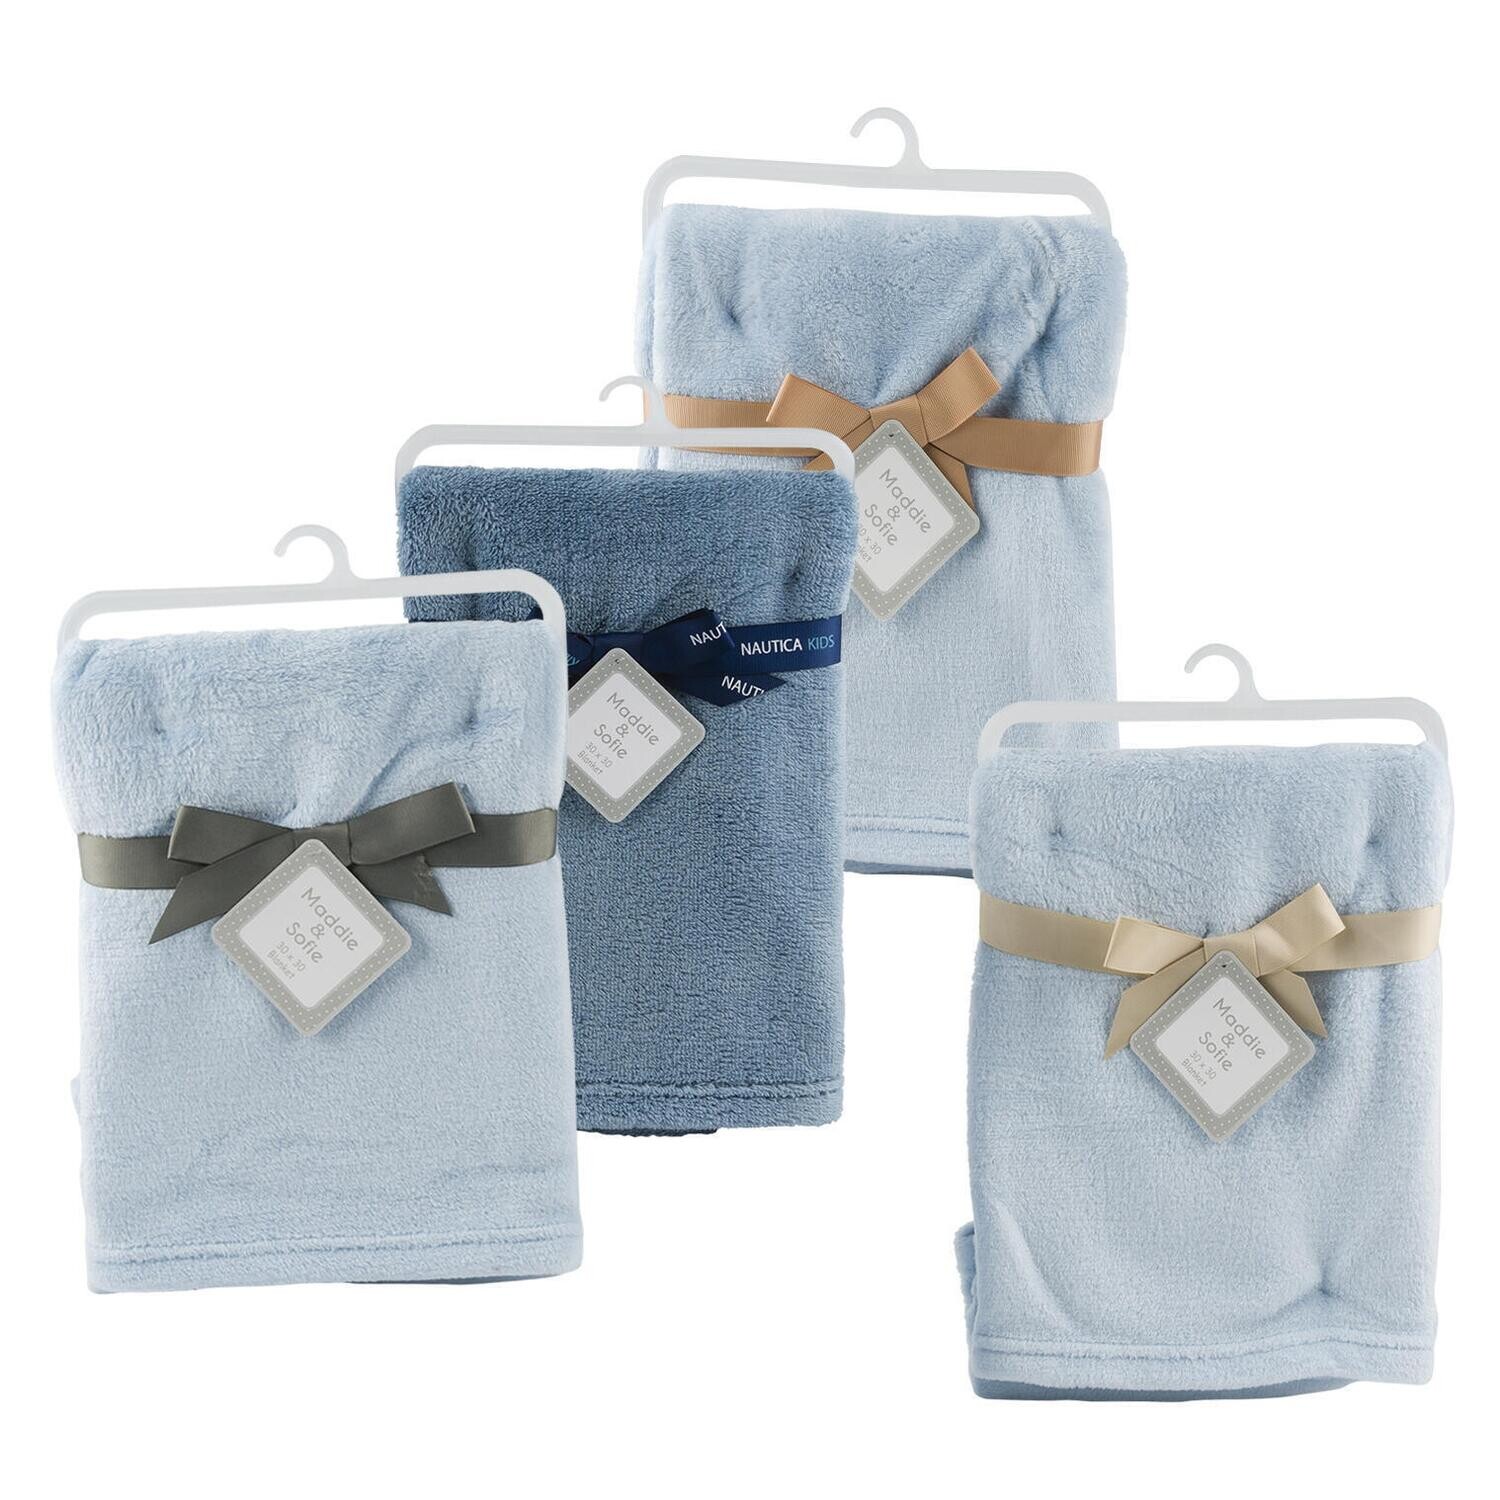 . Case of [60] Baby Blankets - 0-9M, Light & Dark Blue, 30" x 30" .